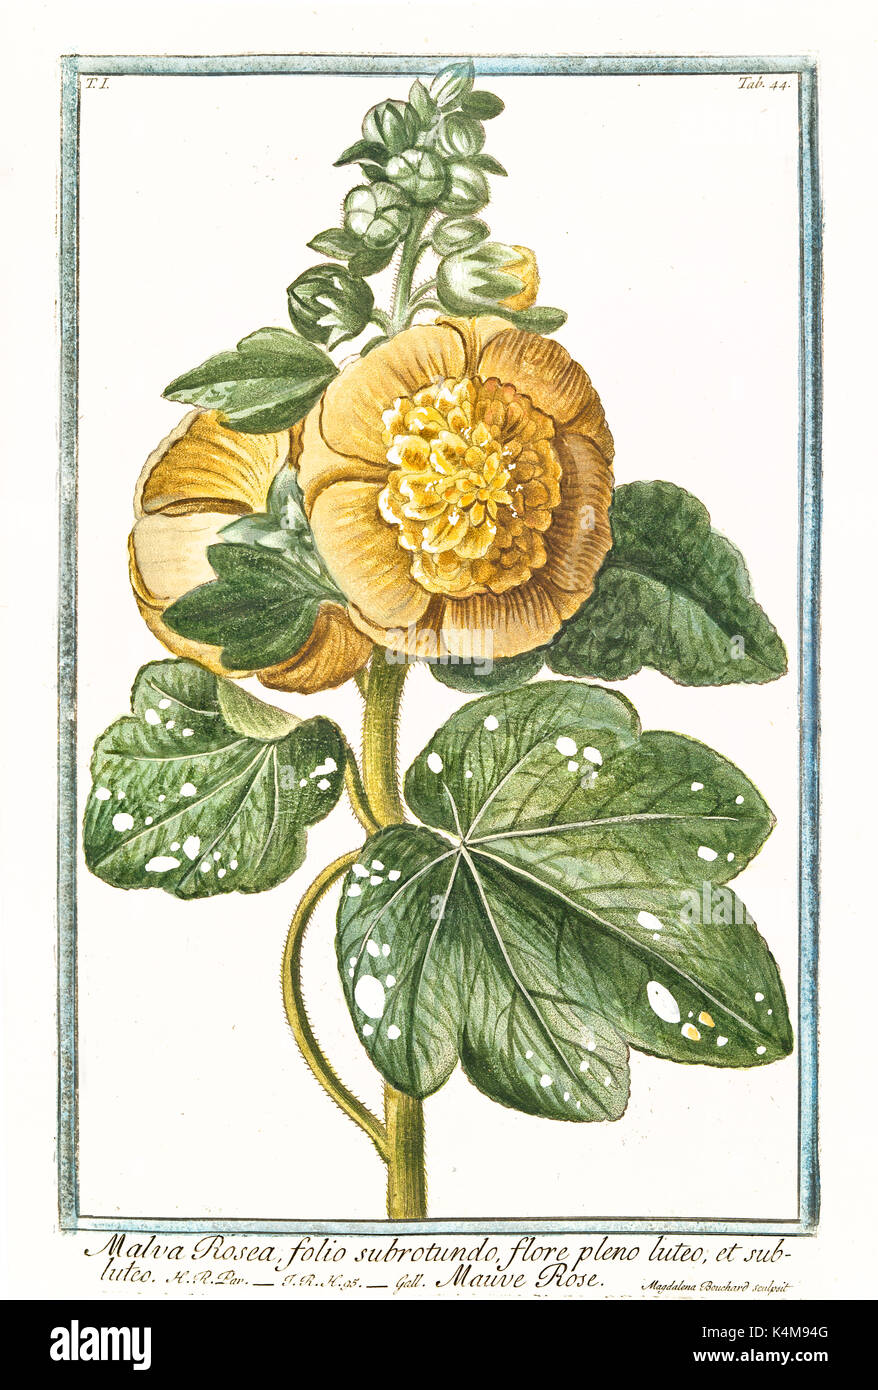 Vieille illustration de Malva rosea, flore, luteo, (Alcea rosea). Par G. Bonelli sur Hortus Romanus, publ. N. Martelli, Rome, 1772 - 93 Banque D'Images